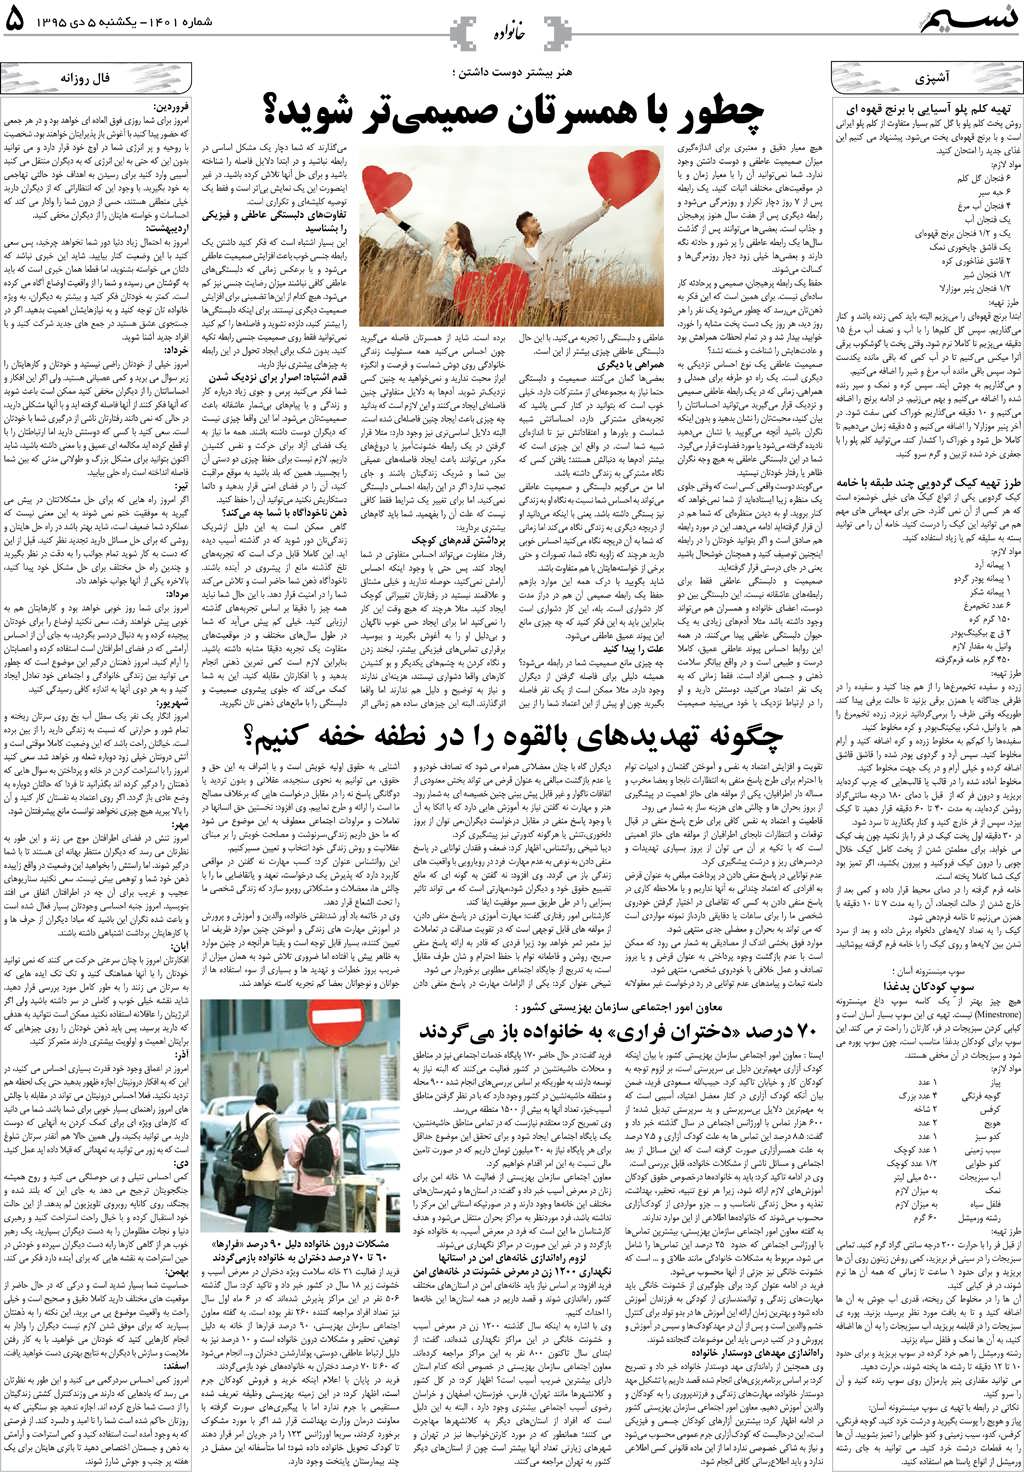 صفحه خانواده روزنامه نسیم شماره 1401